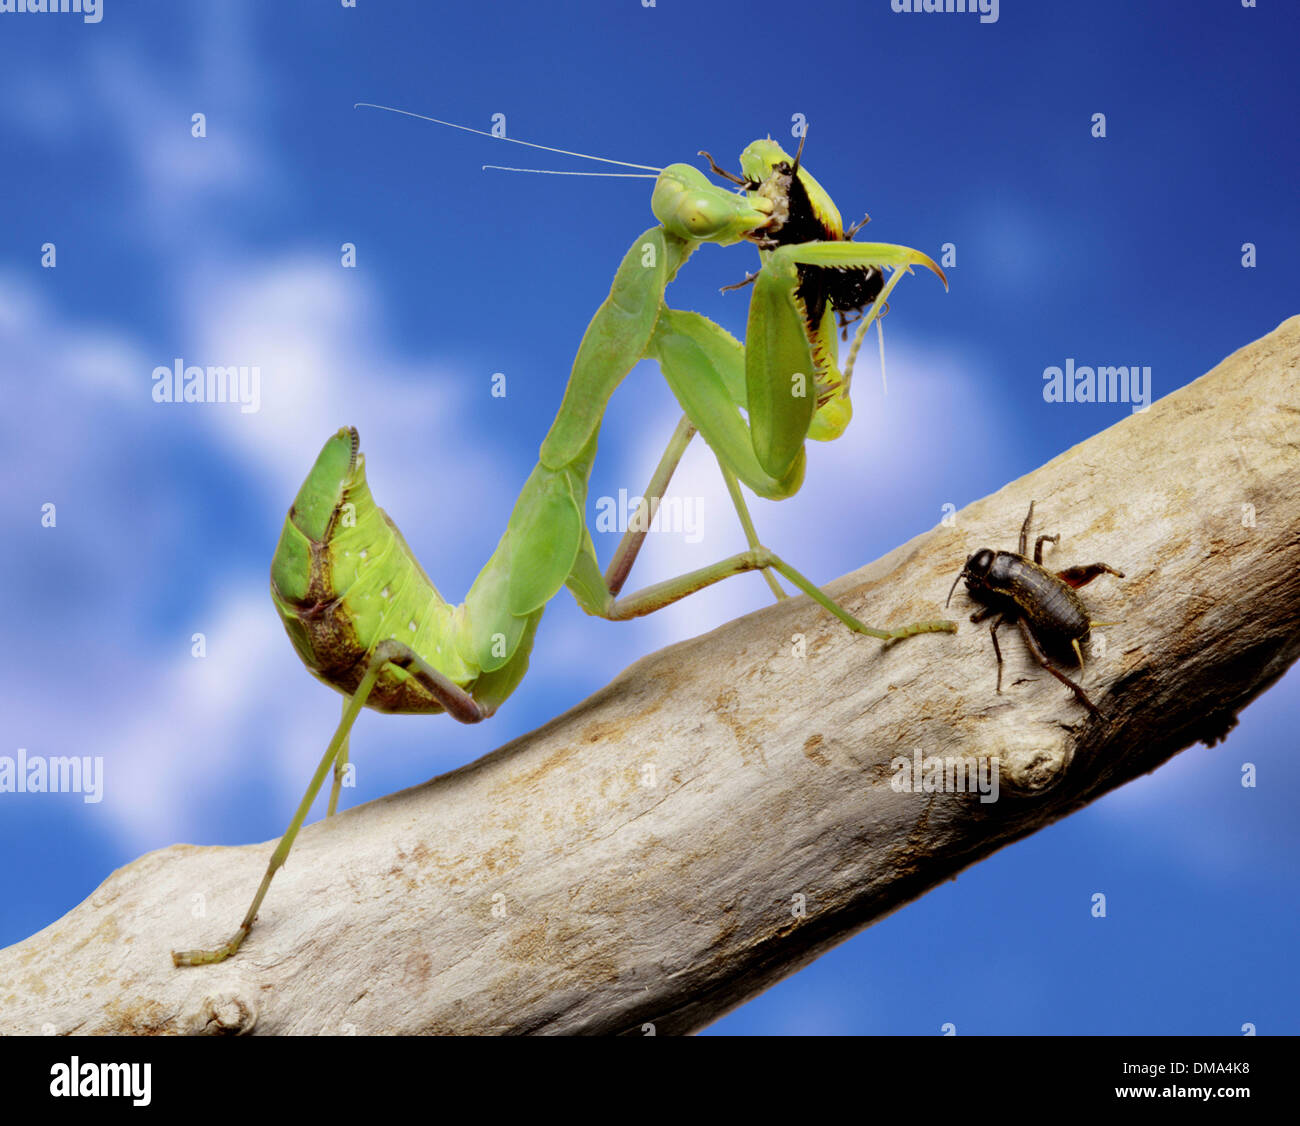 Praying Mantis eating a cricket Stock Photo